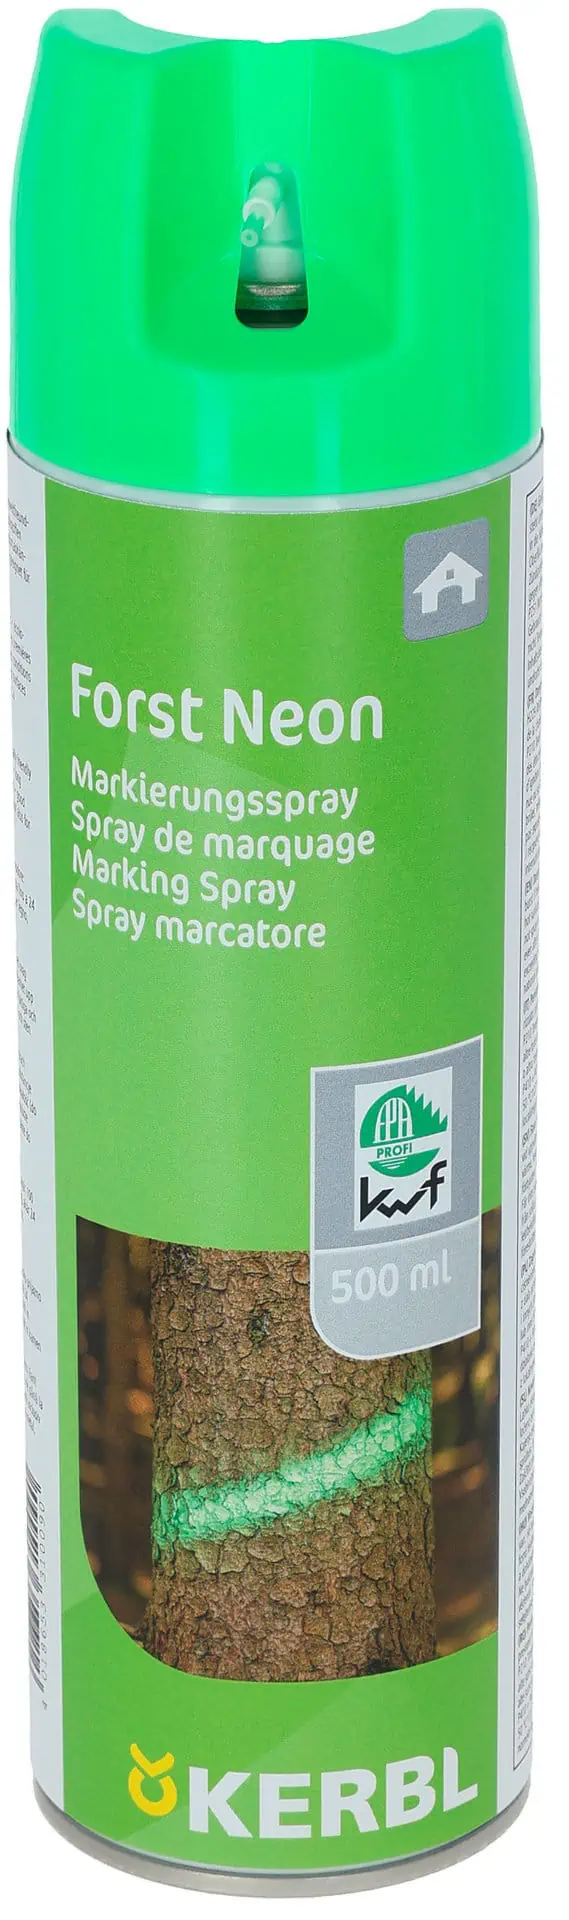 Markierungsspray Forst Neon grün 500 ml